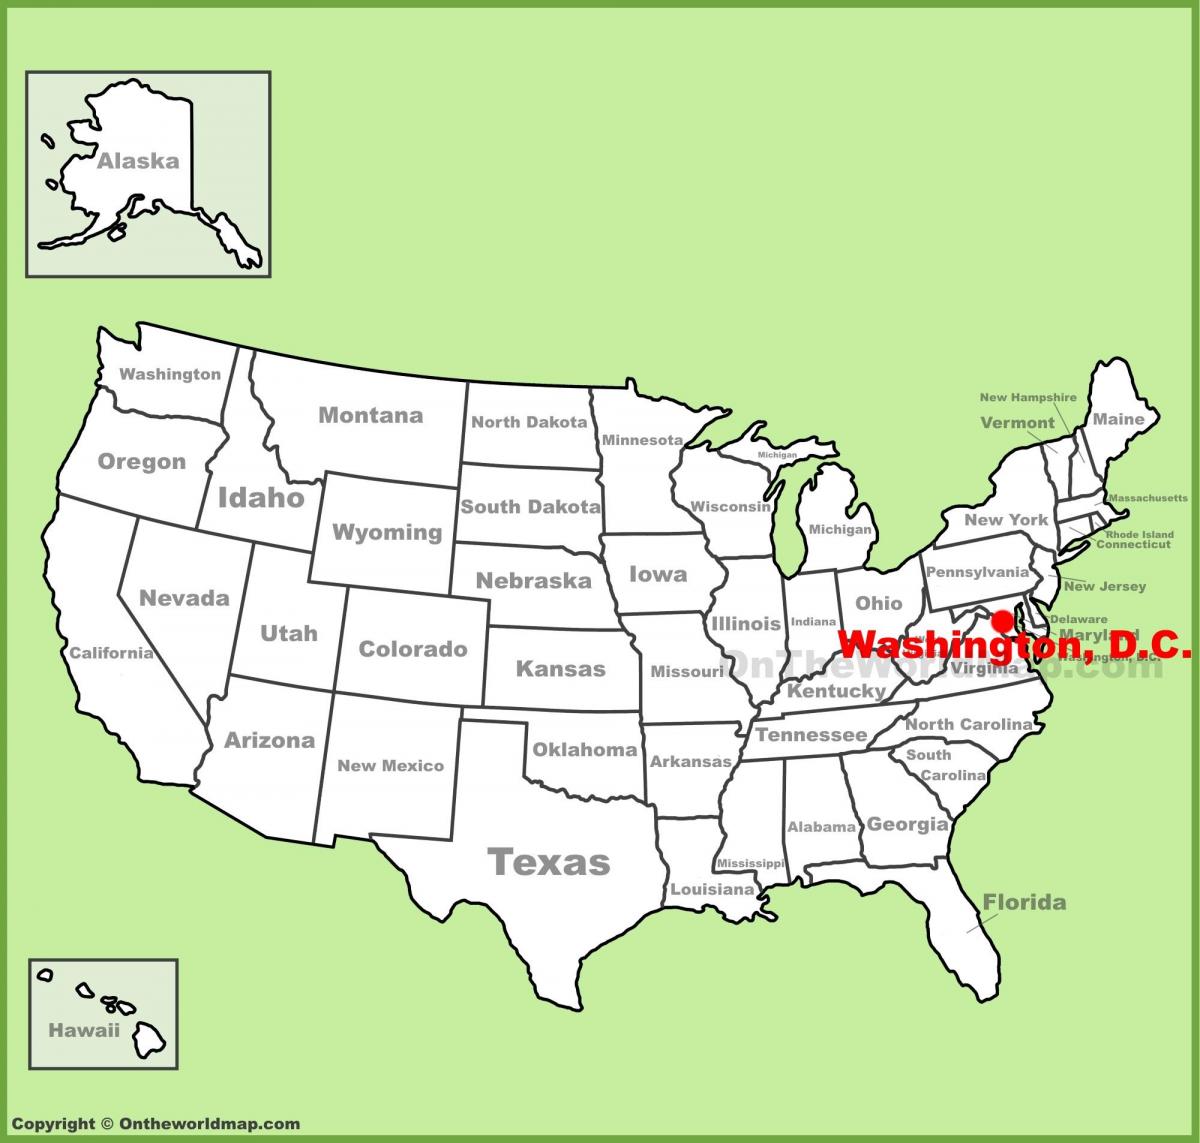 Washington lokacija na karti